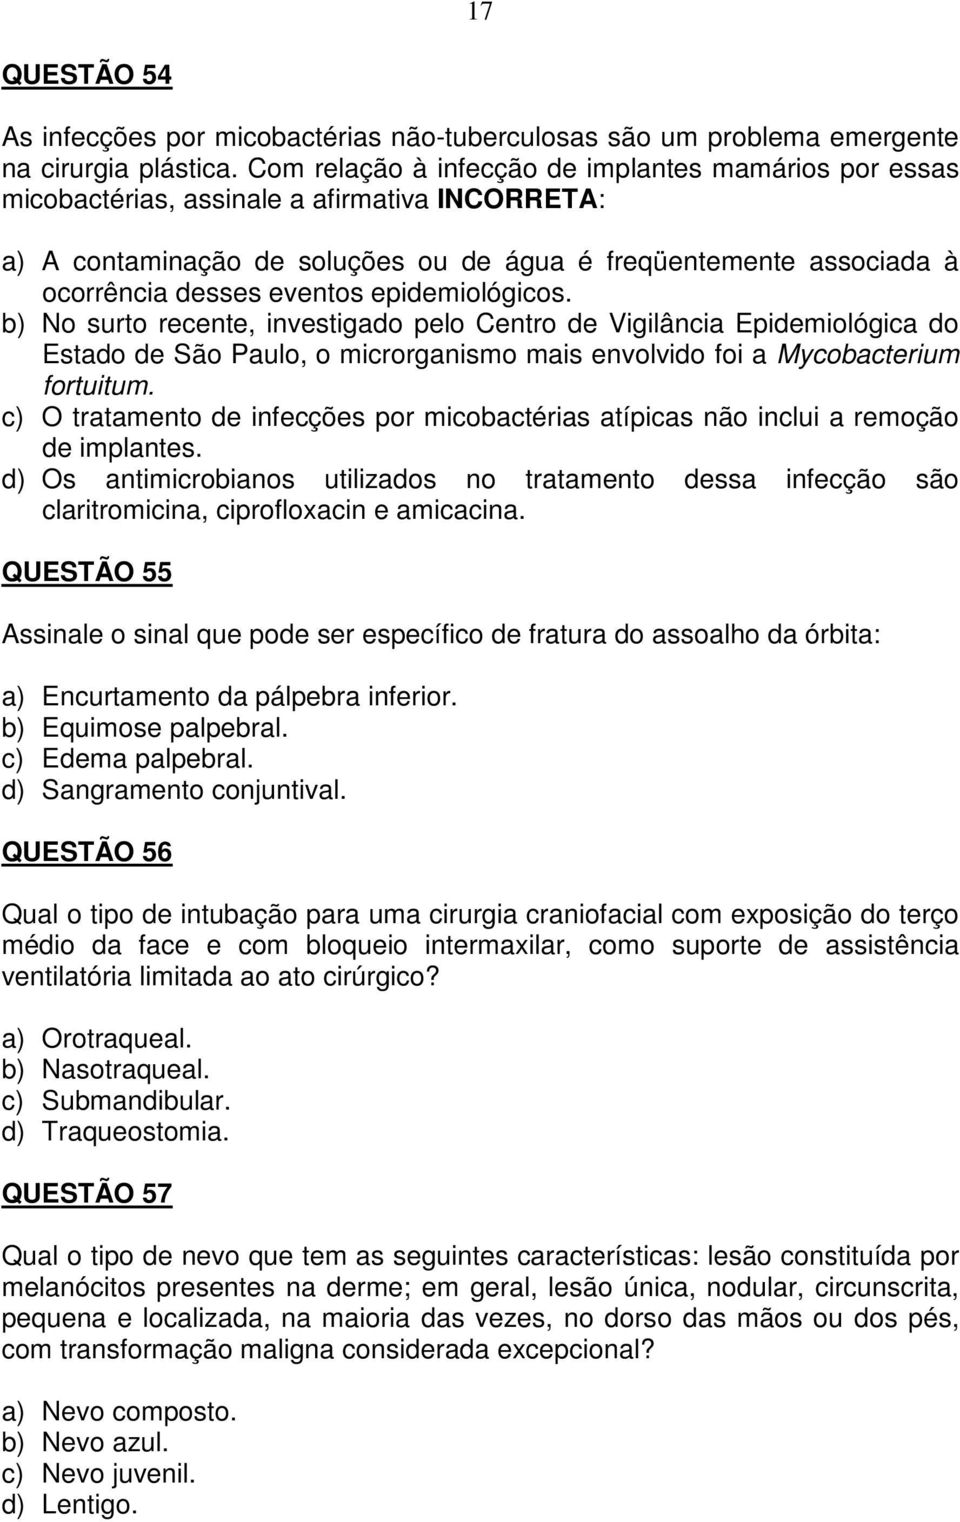 epidemiológicos. b) No surto recente, investigado pelo Centro de Vigilância Epidemiológica do Estado de São Paulo, o microrganismo mais envolvido foi a Mycobacterium fortuitum.